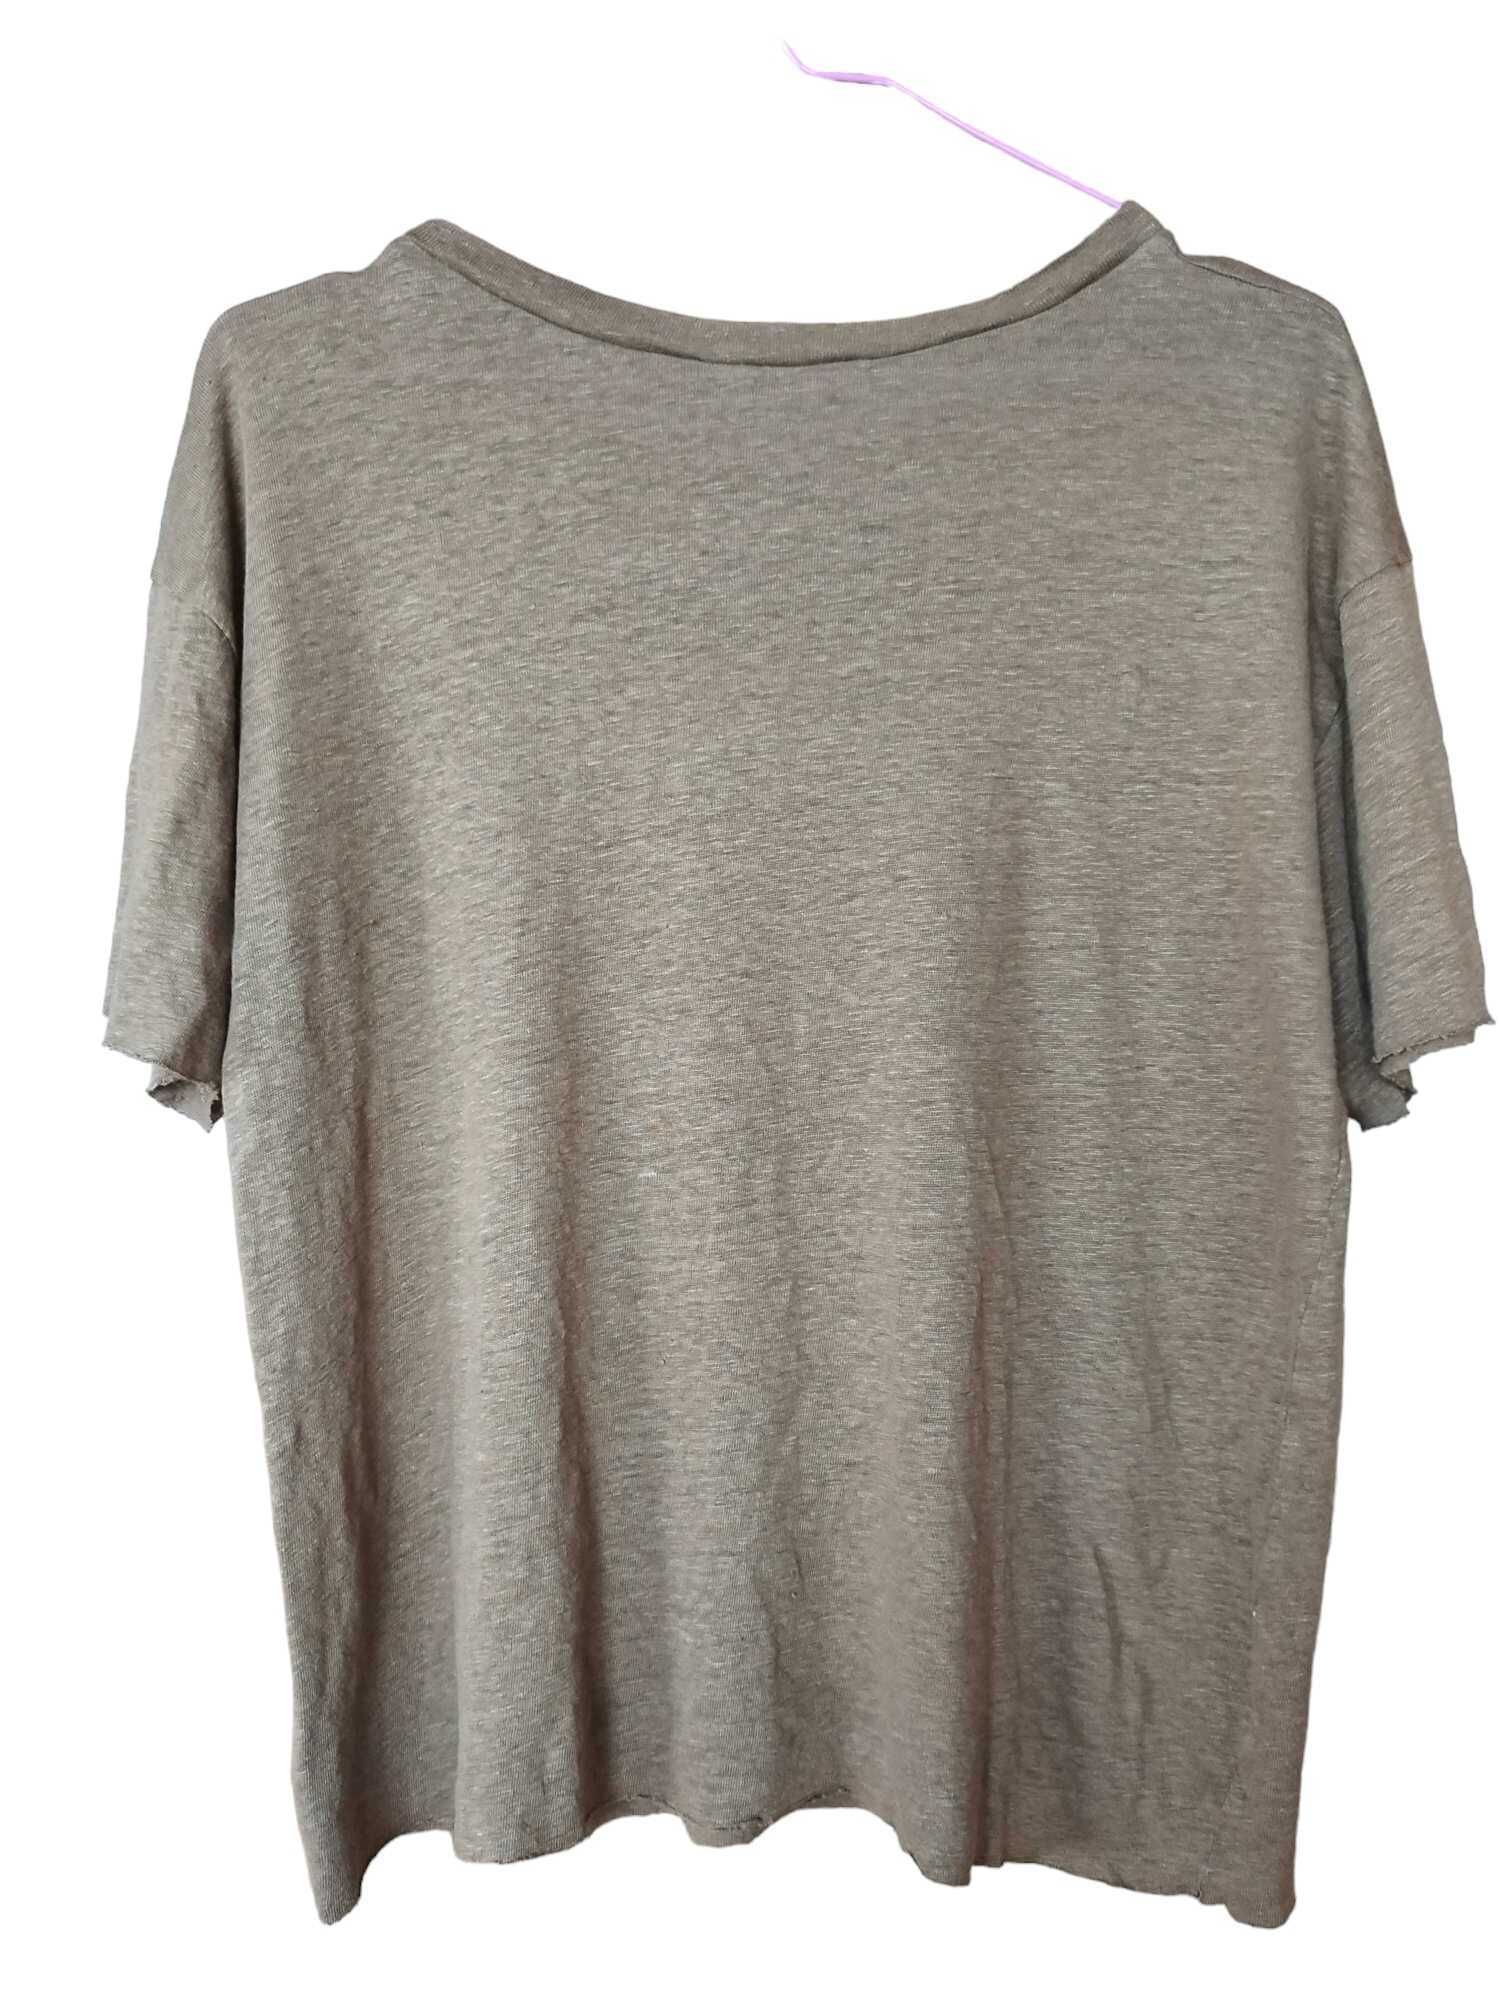 Дамска тениска Zara, 100% лен, Масленозелена, XL